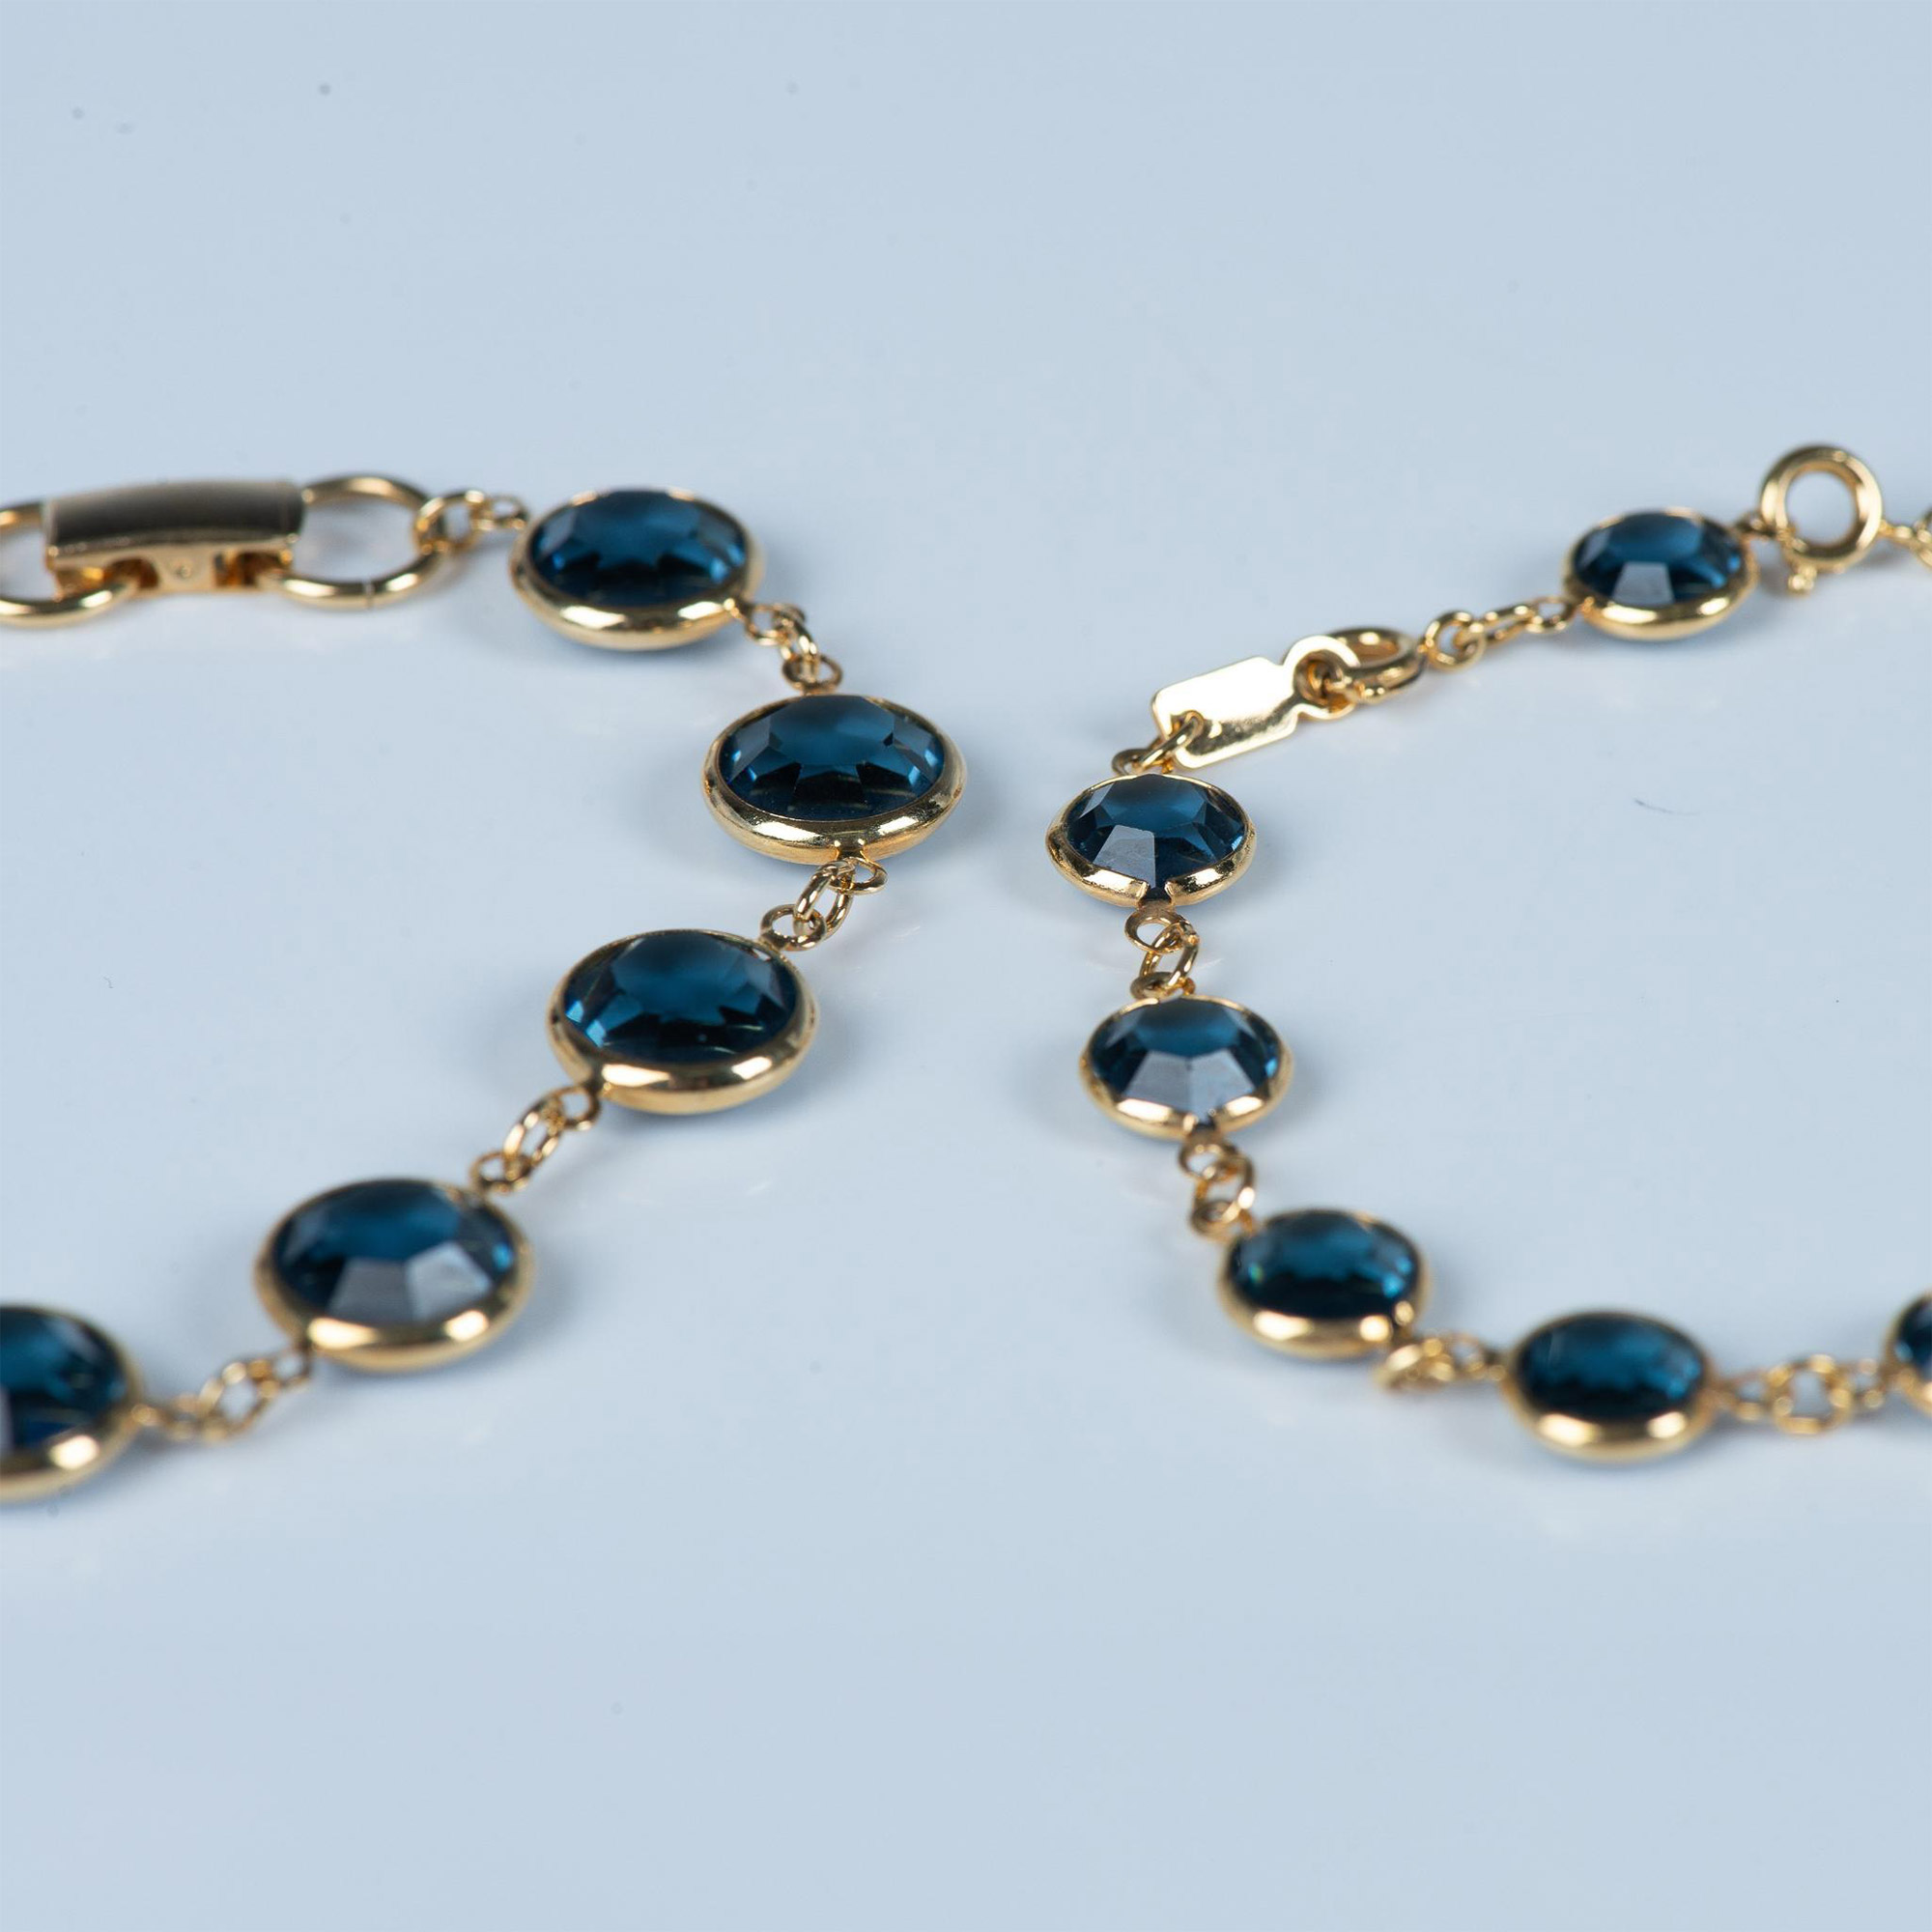 2pc Gold Metal & Dark Blue Crystal Bracelets - Image 2 of 3